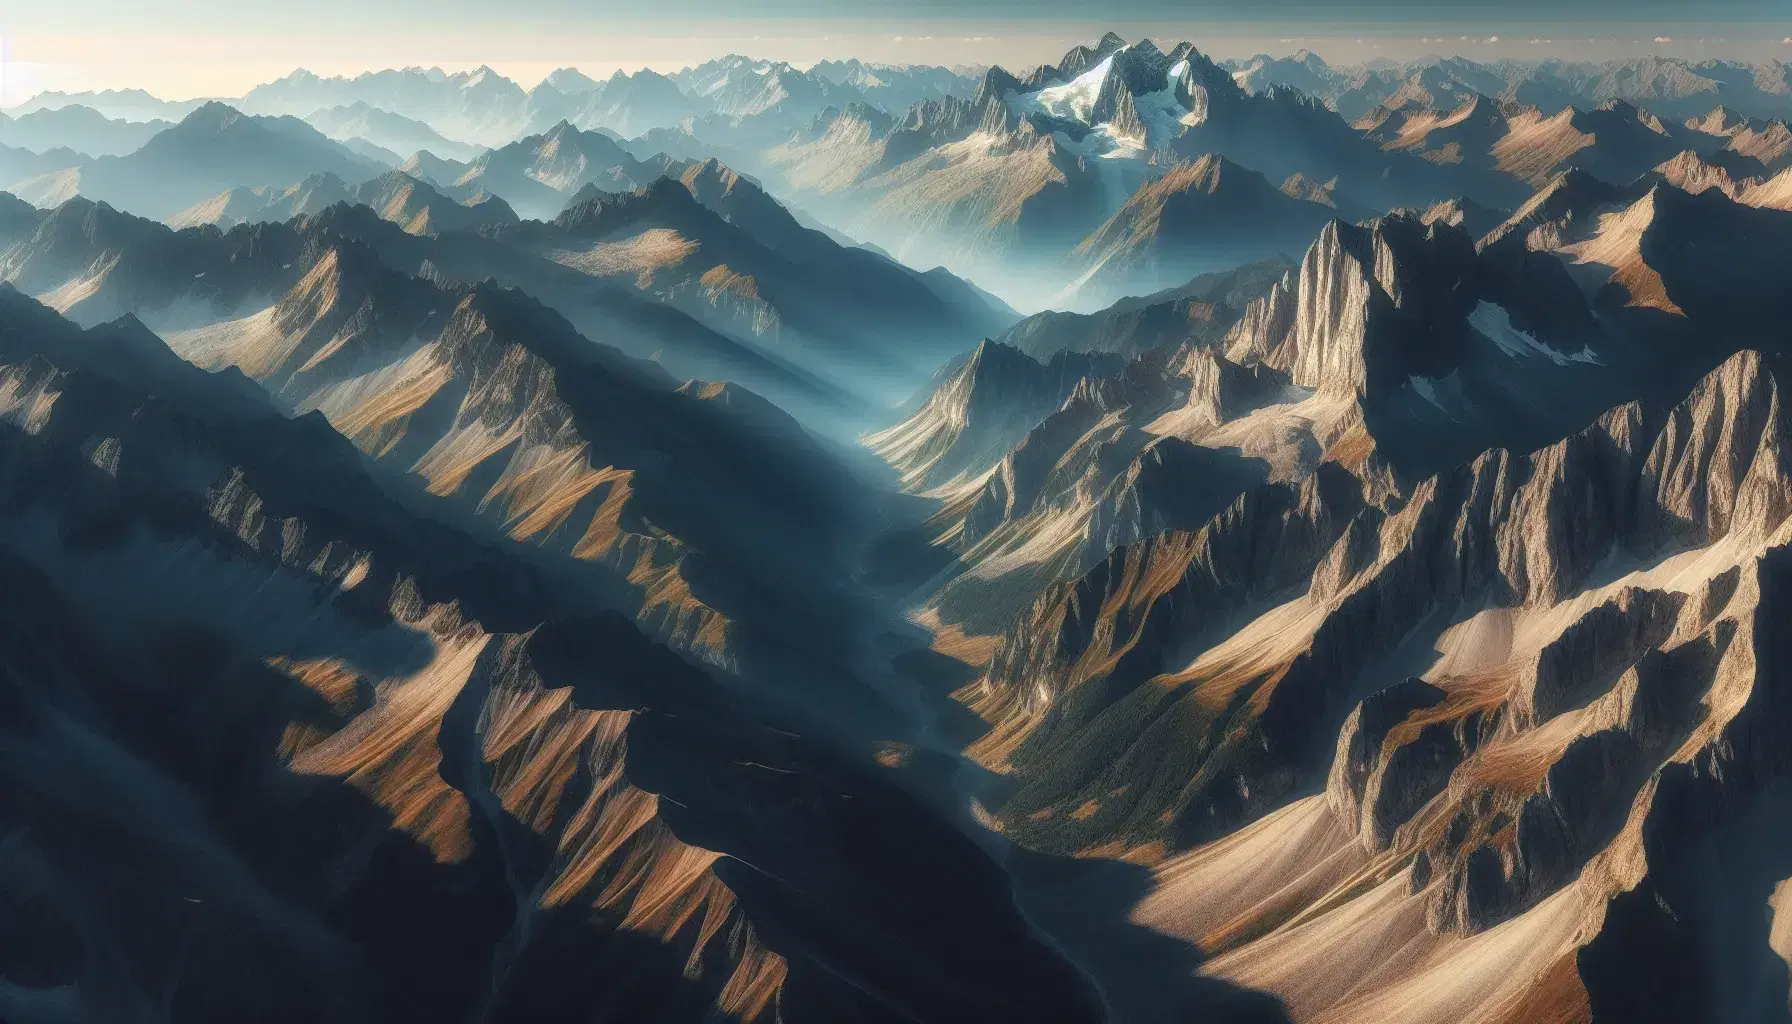 Vista aérea de una cadena montañosa con picos nevados y valle profundo bajo un cielo azul claro, sin señales de presencia humana.